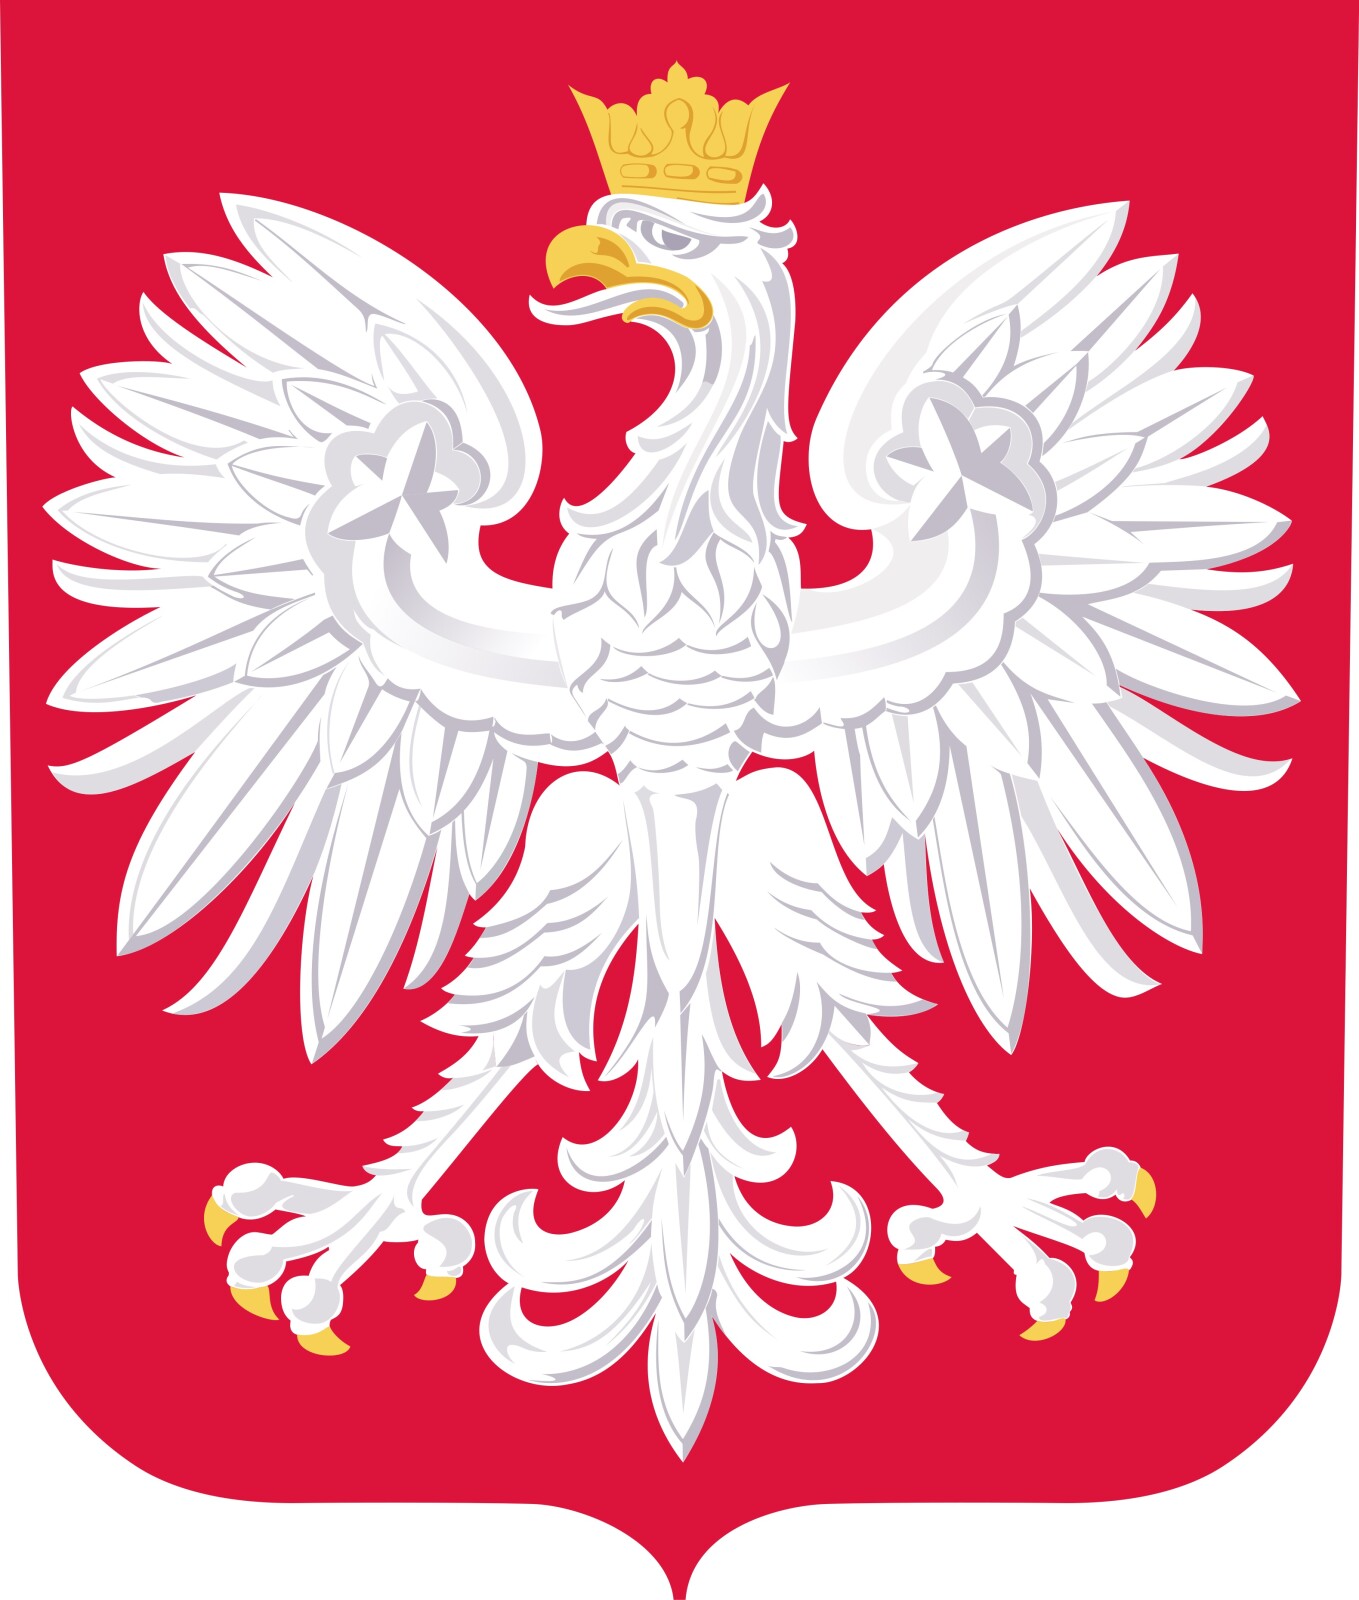 Godło Polski - biały orzeł w koronie na czerwonym tle